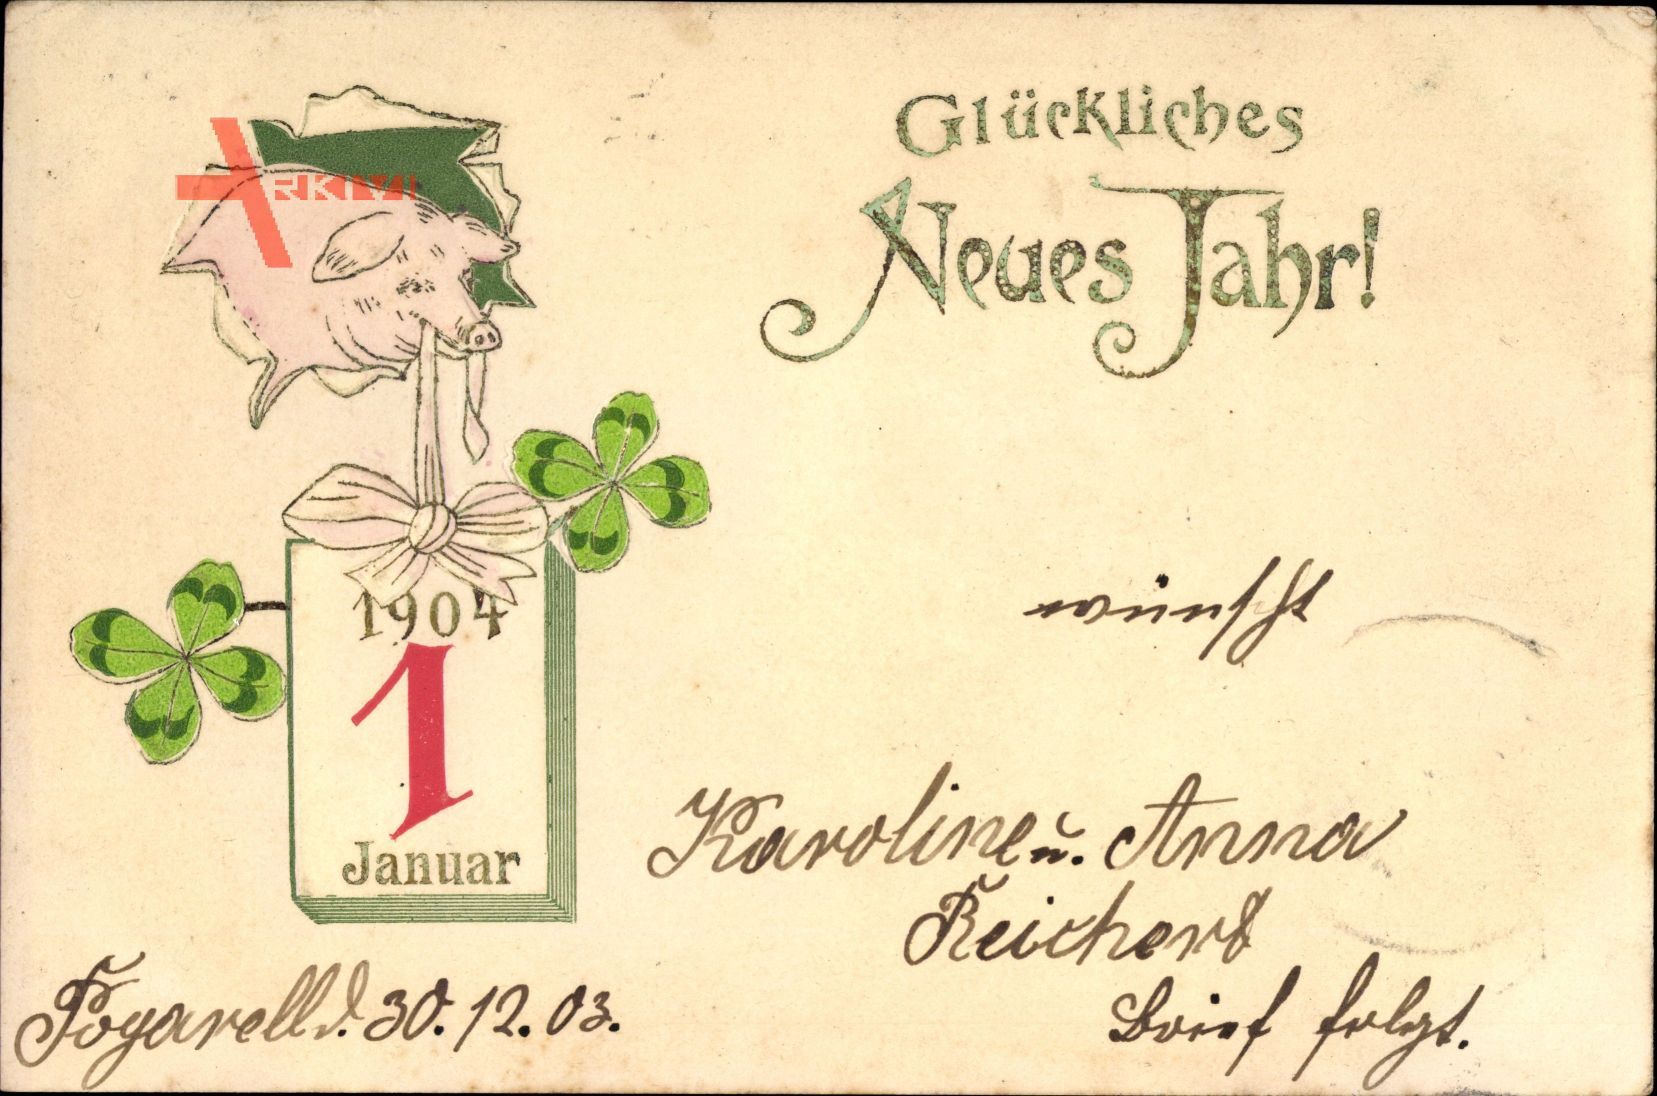 Glückwunsch Neujahr, Kalender, 1 Januar 1904, Schwein, Kleeblätter